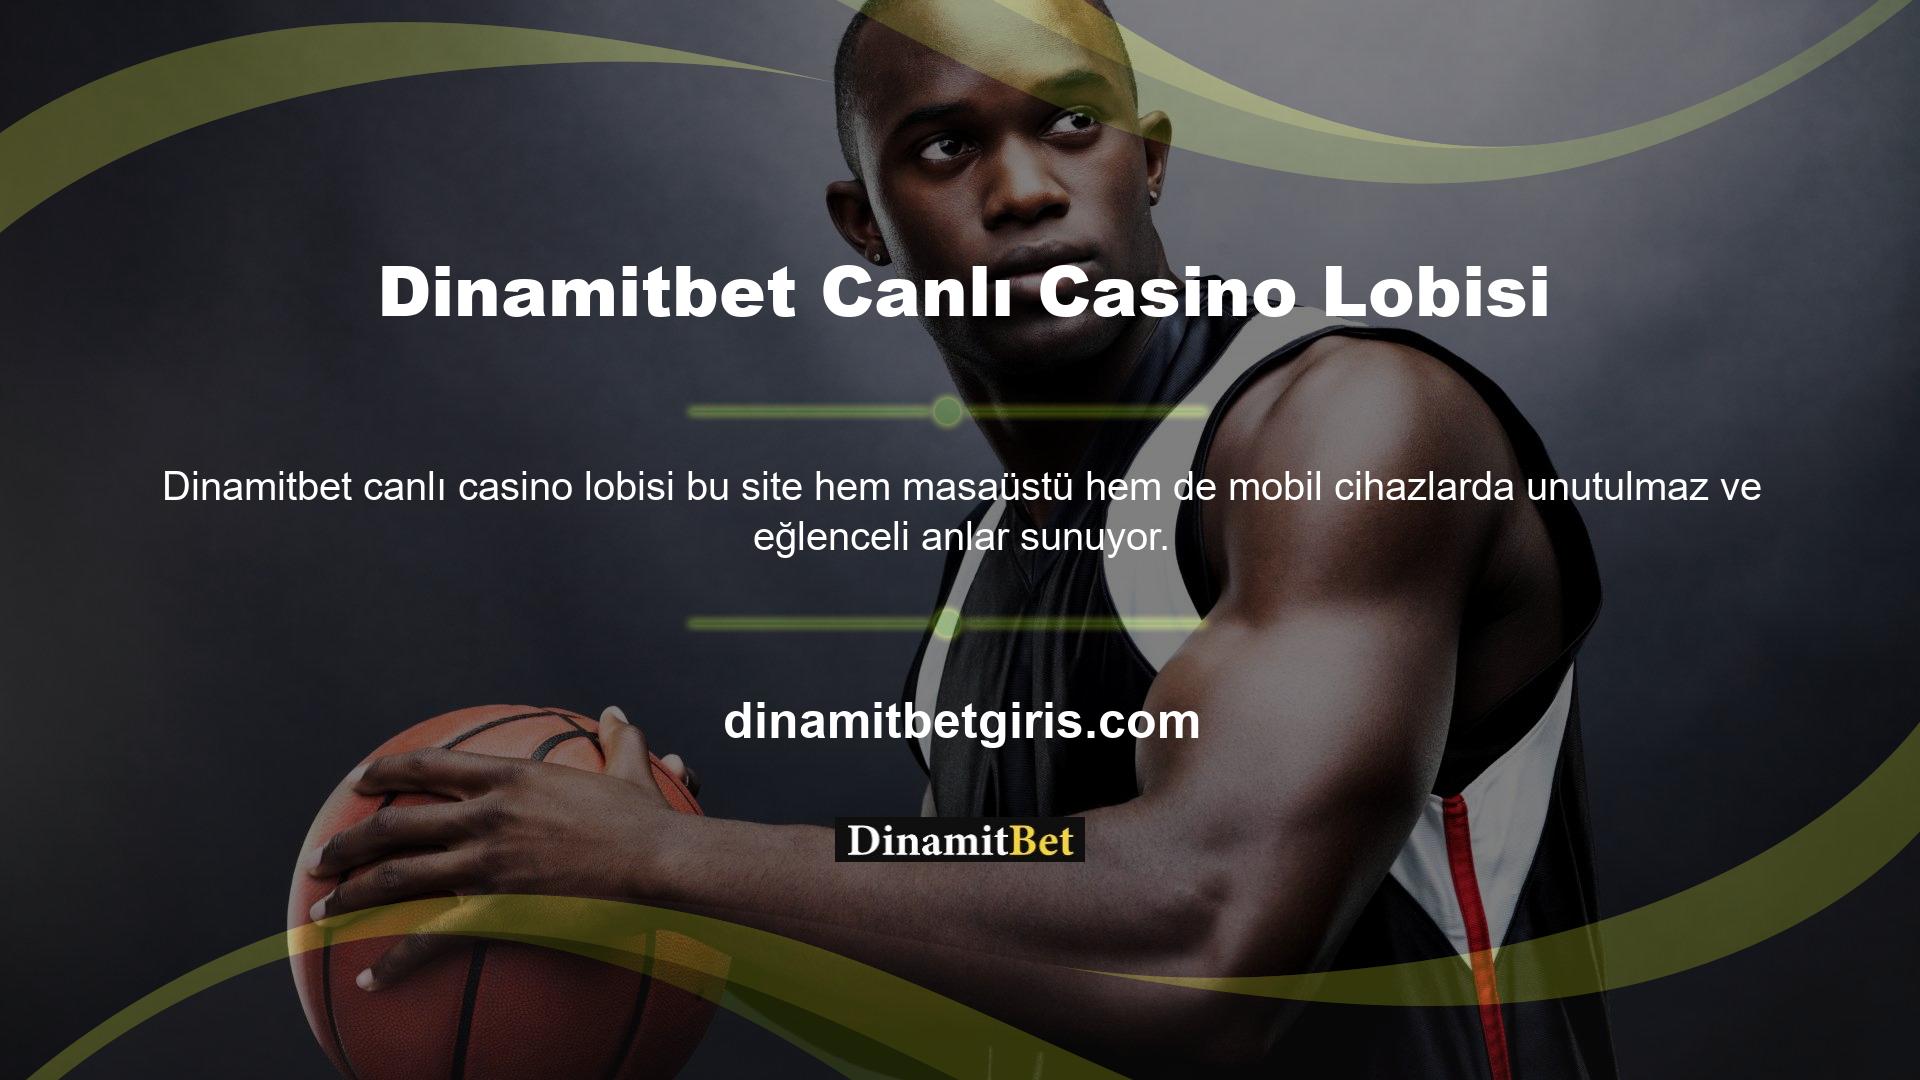 Casino Dinamitbet, slot makinelerine erişim ve canlı casino oyunları içeren bir lobi sunmaktadır